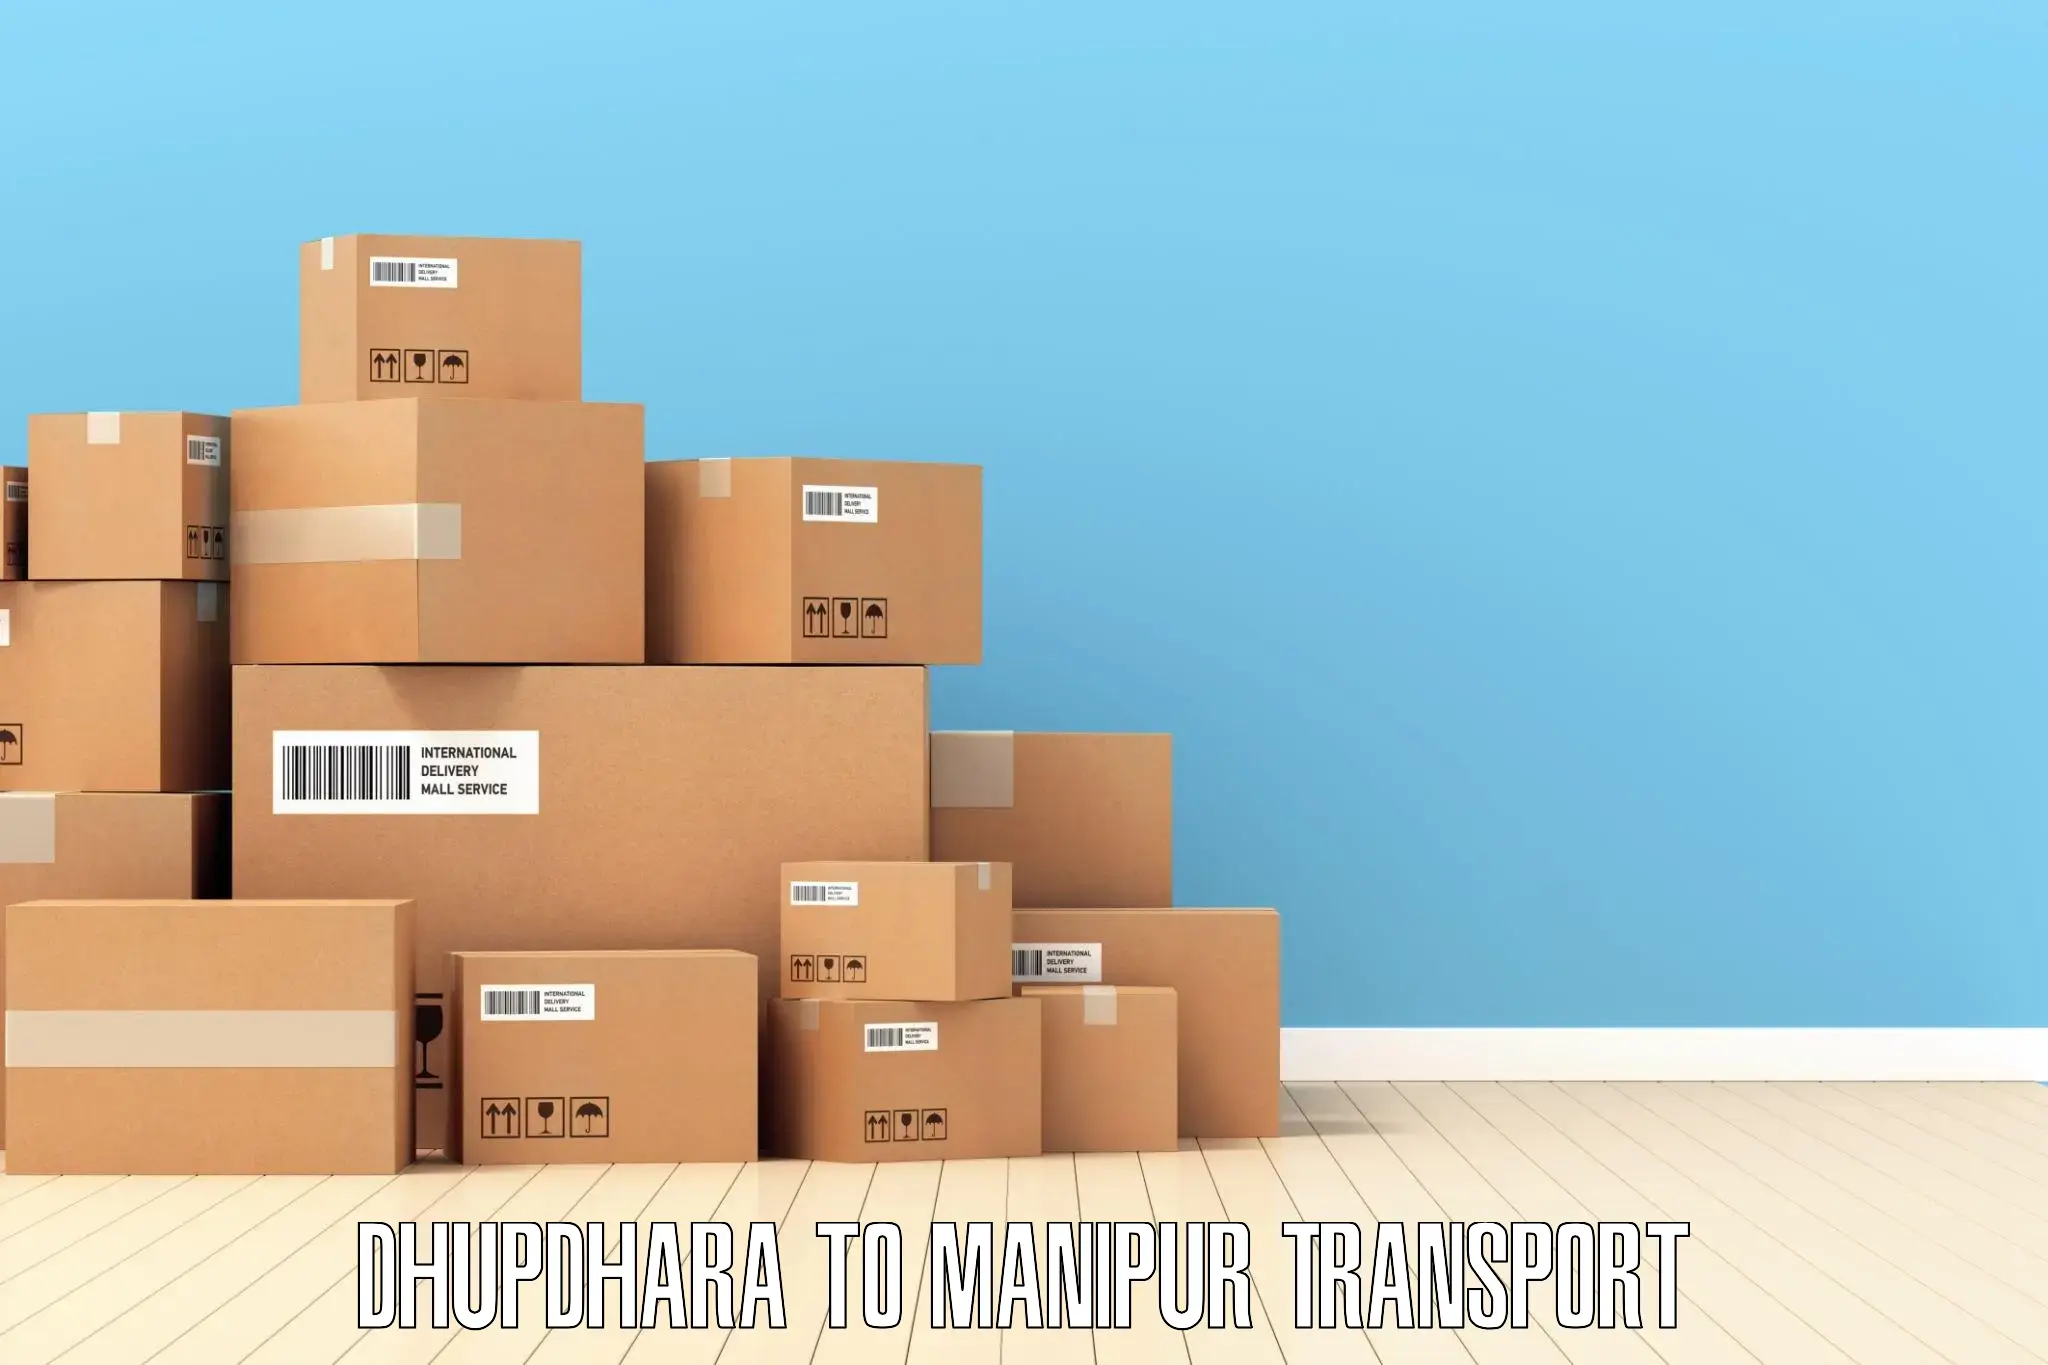 Road transport online services Dhupdhara to Kaptipada